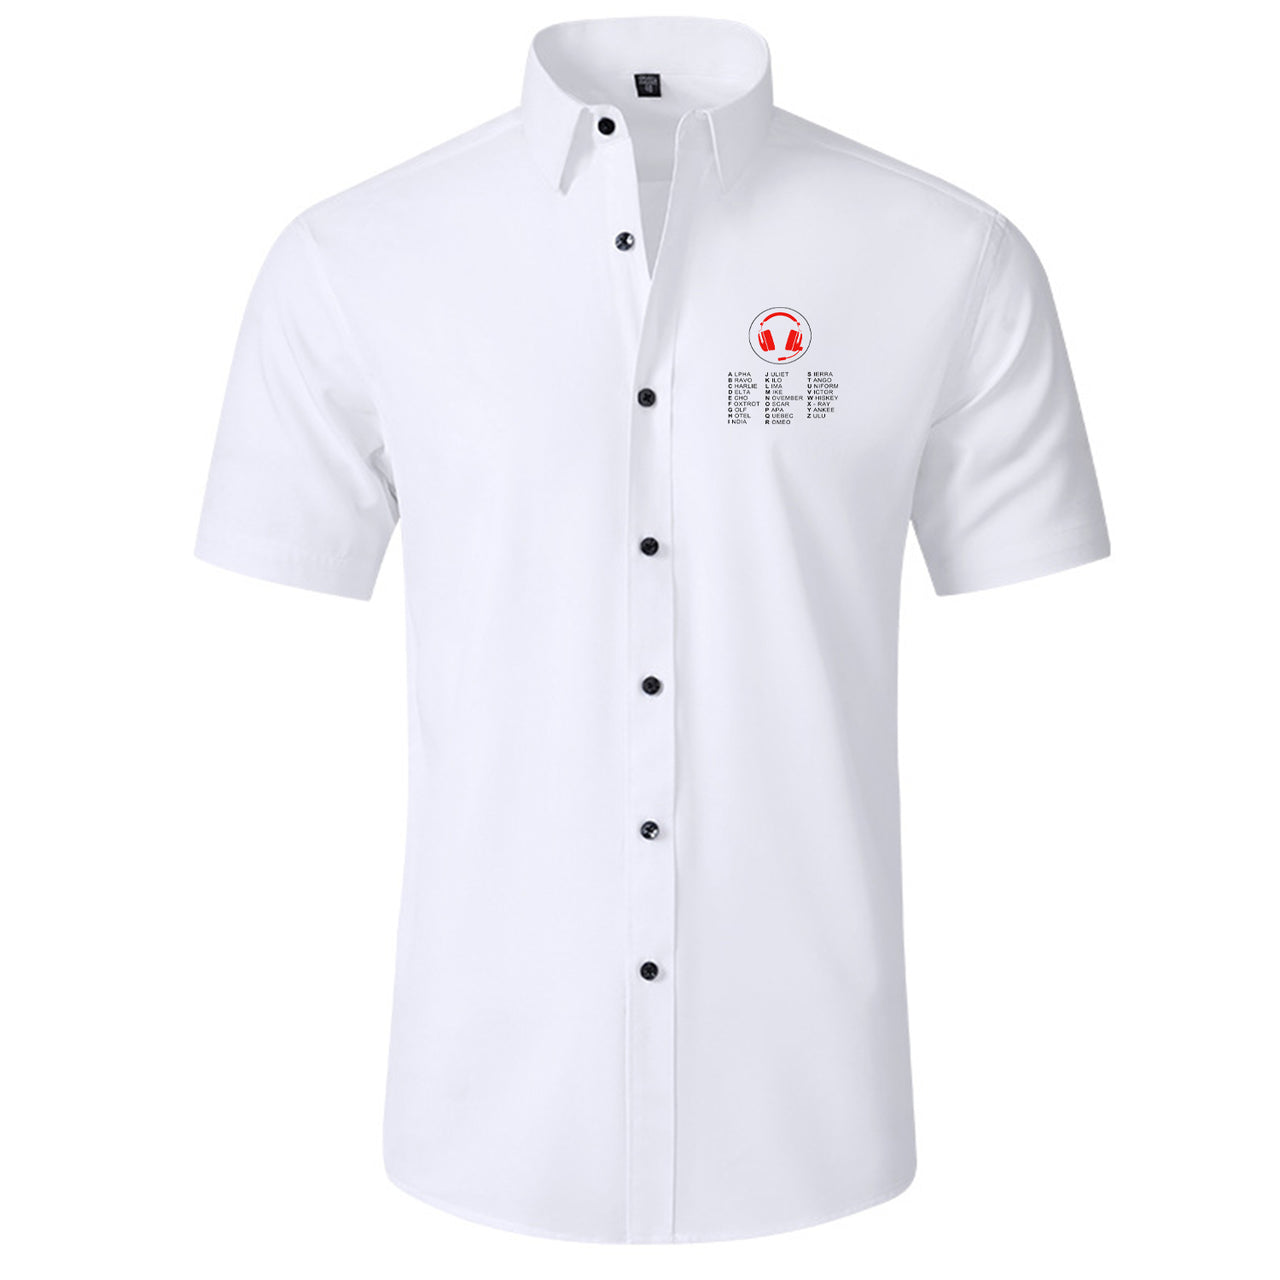 Aviation Alphabet 3 Designed Short Sleeve Shirts